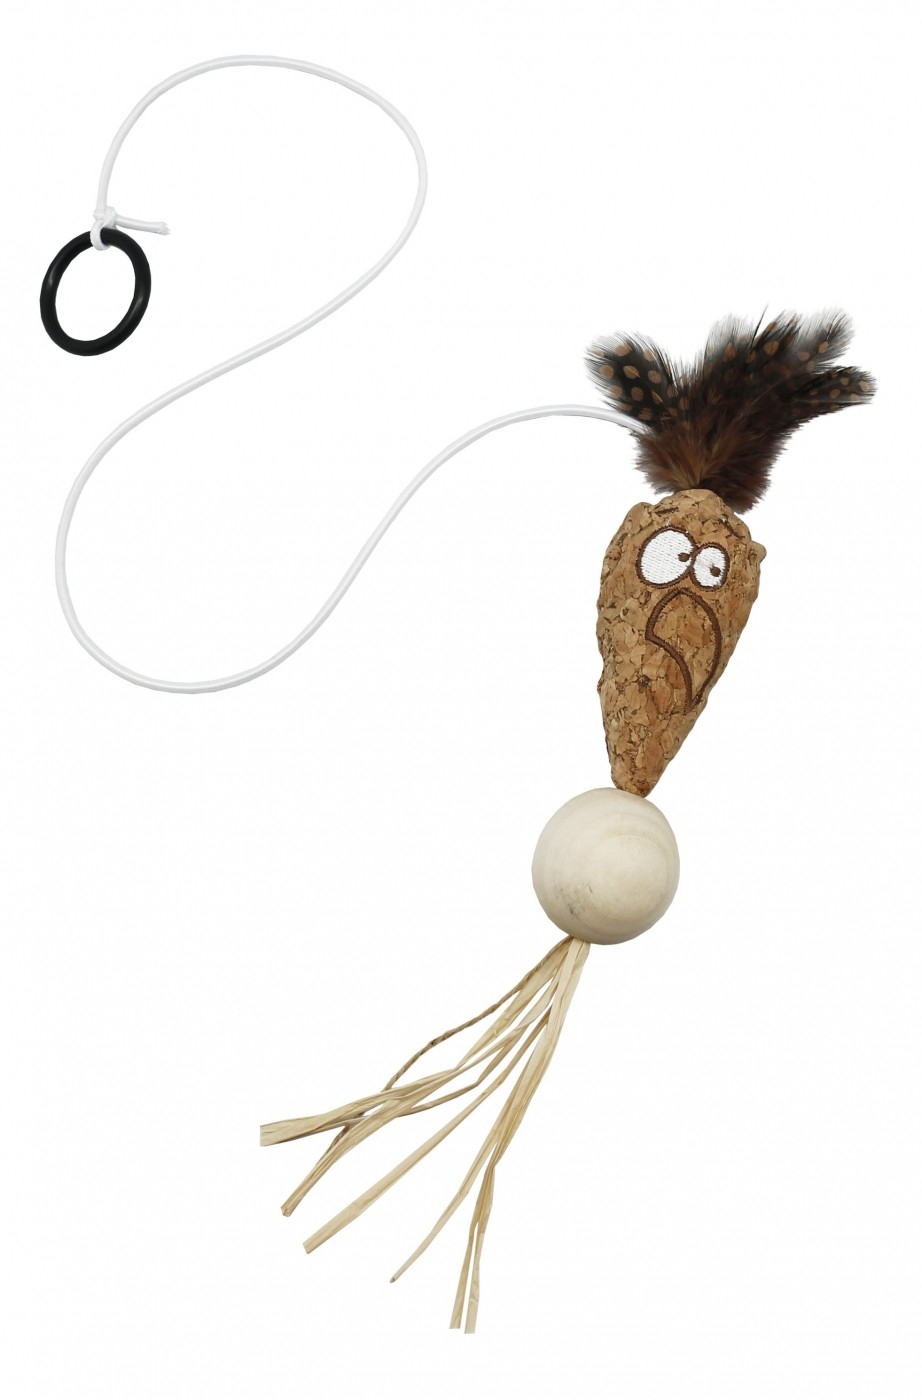 Spielzeug Karotte funny face zum Aufhängen